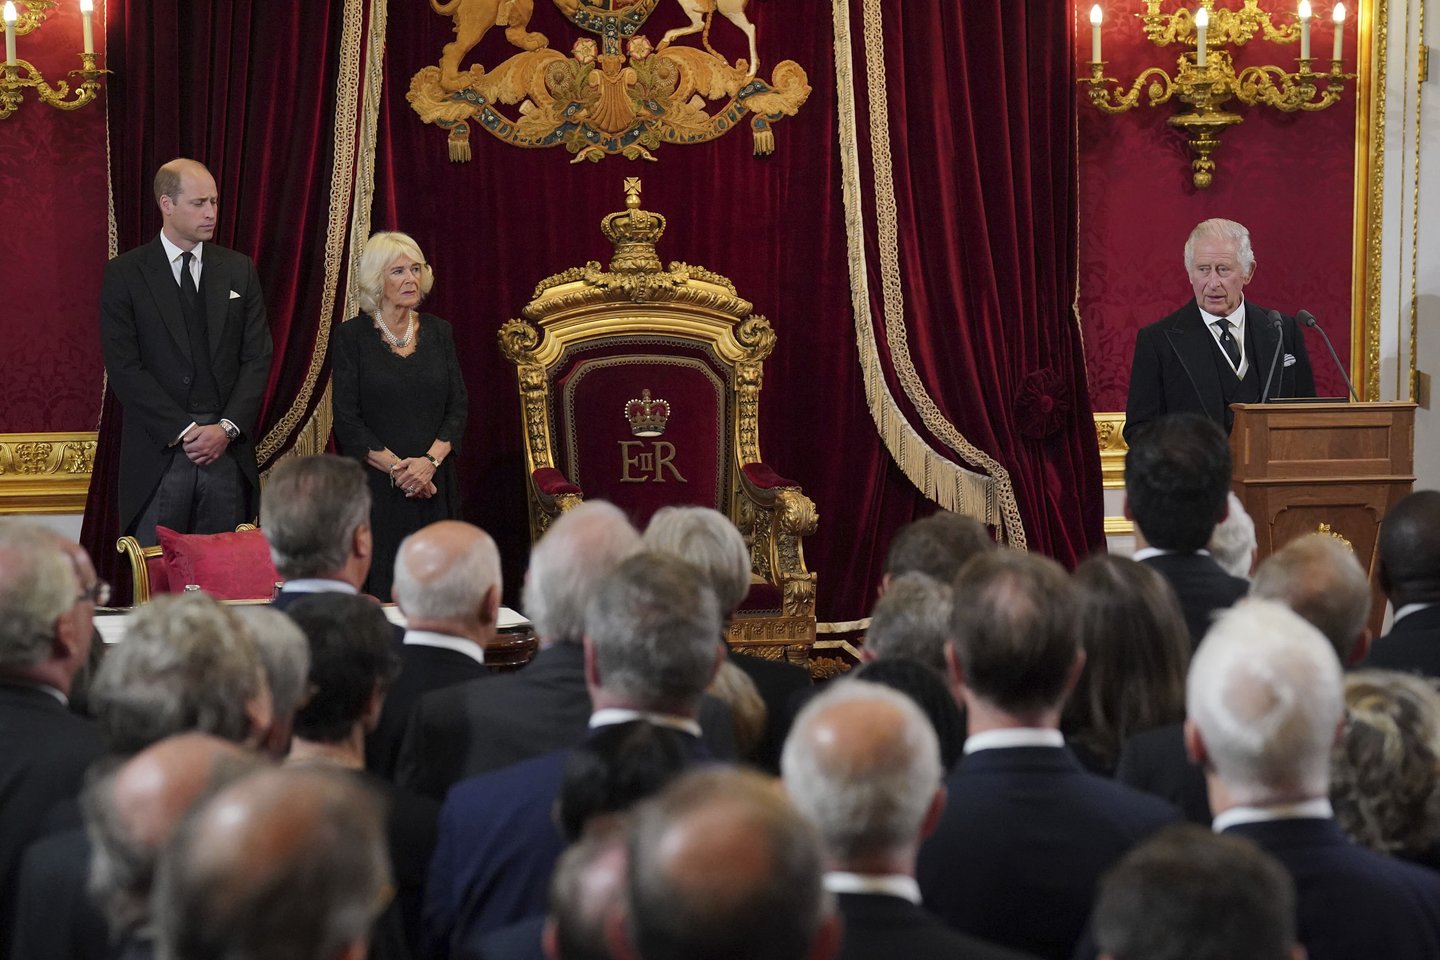 Didžiosios Britanijos princas Williamas, karalienė konsortė Camilla ir karalius Charlesas III (iš kairės) priešais Slaptosios tarybos narius sosto salėje per Sosto tarybos posėdį Švento Jokūbo rūmuose Londone, šeštadienį, 2022 m. rugsėjo 10 d., kur karalius Charlesas III oficialiai paskelbtas karaliumi.<br>AP/Scanpix nuotr.